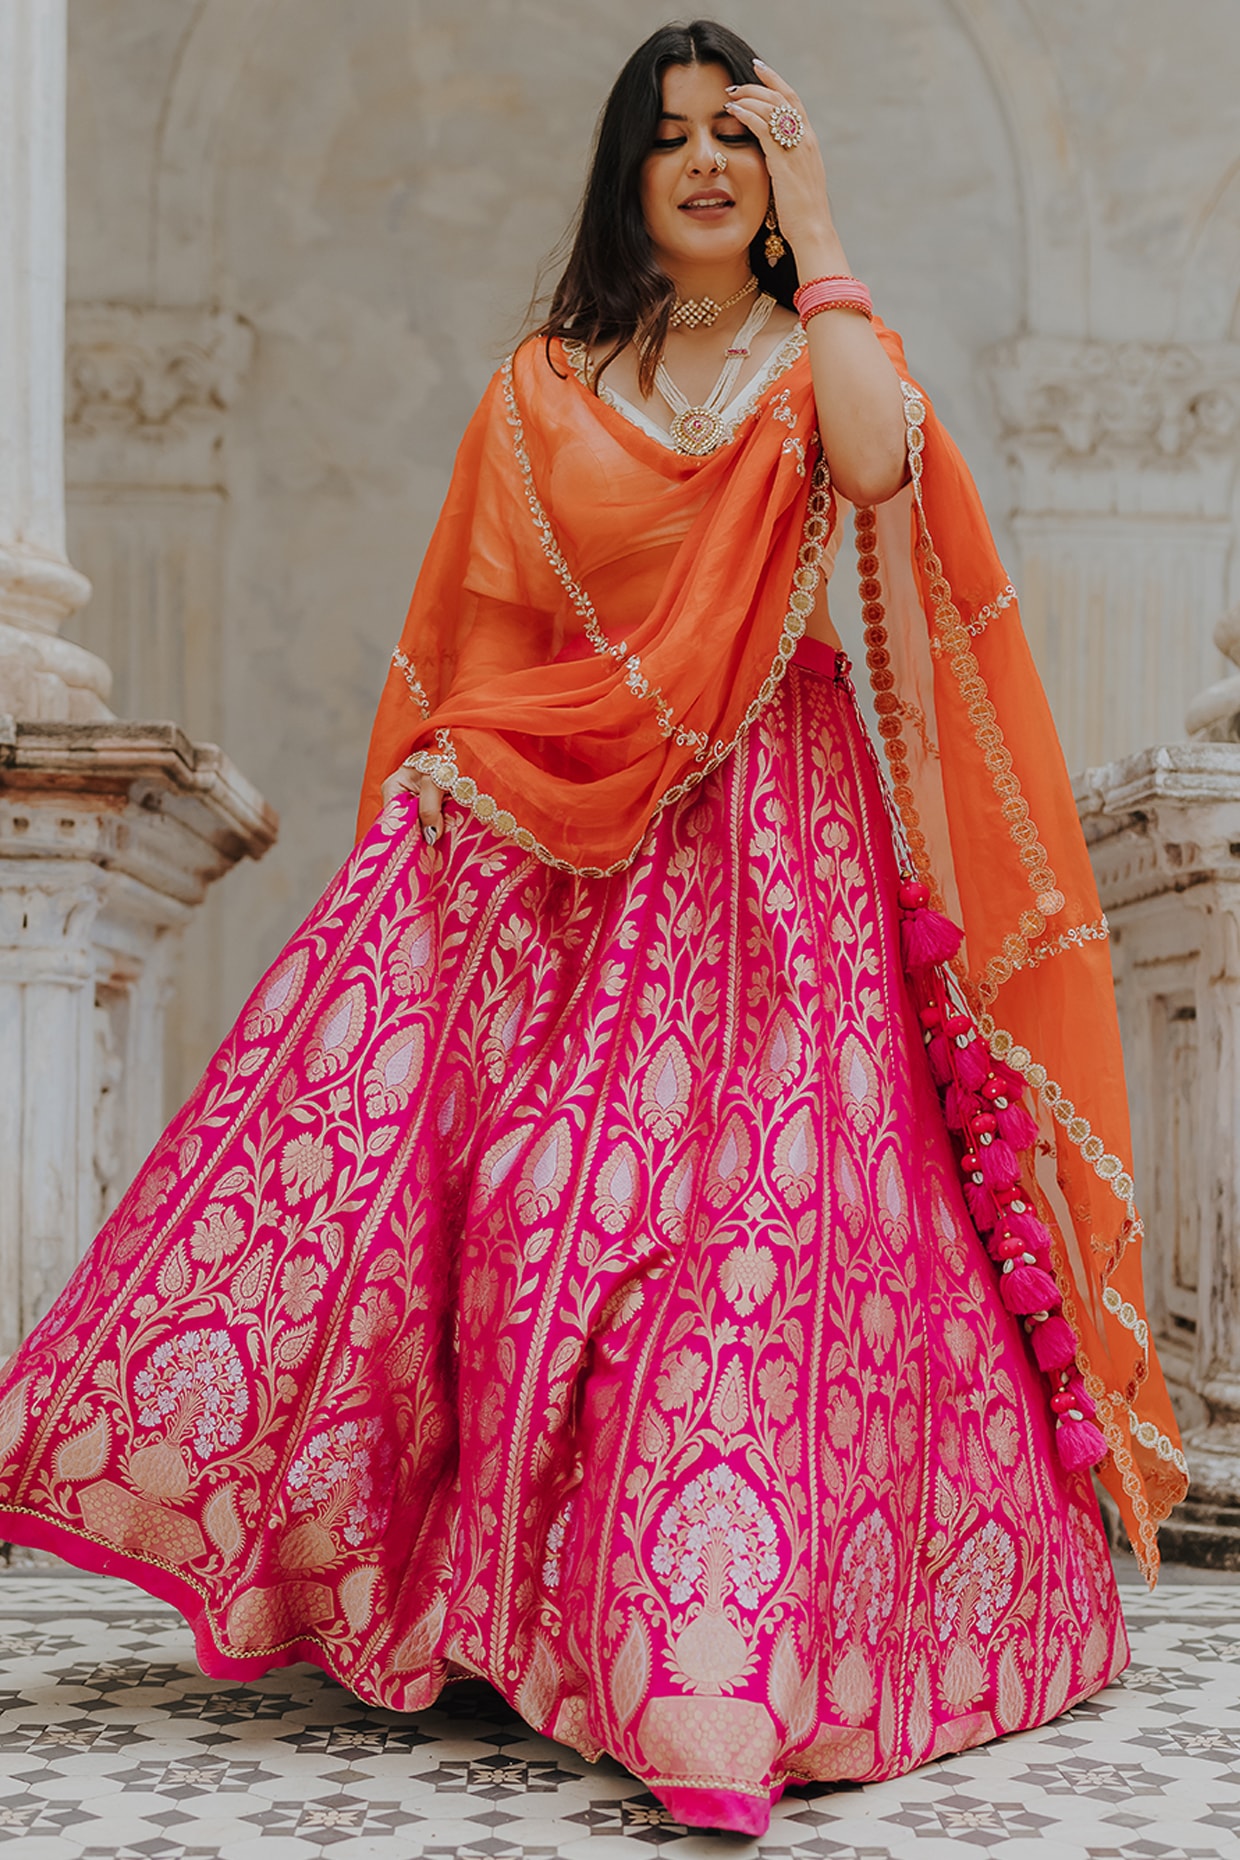 New Brocade/Banarasi Lehenga Designs 2021|Beautiful Banarasi Fabric Lehe...  | Lehenga